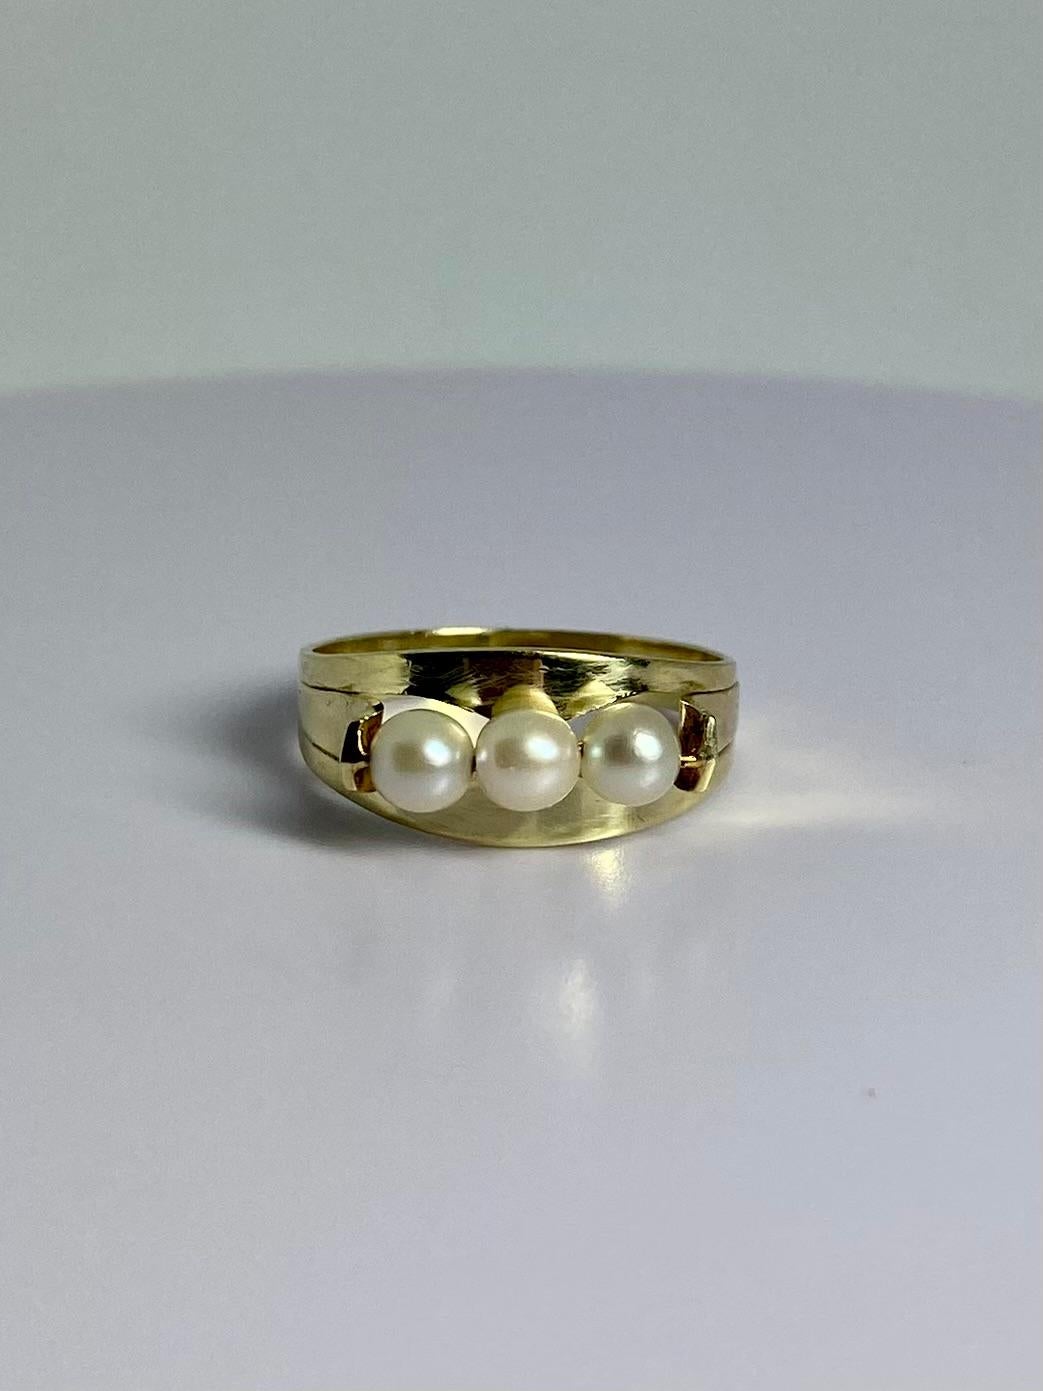 Das ist etwas anderes, elegant und raffiniert. Dieses gebrauchte Schmuckstück besteht aus 14 Karat Gelbgold und ist mit 3 weißen runden Perlen besetzt. Die Perlen sind in einer offenen Fassung gefasst. Wiegt etwa 2,5 Gramm und hat Ringgröße 6 1/2